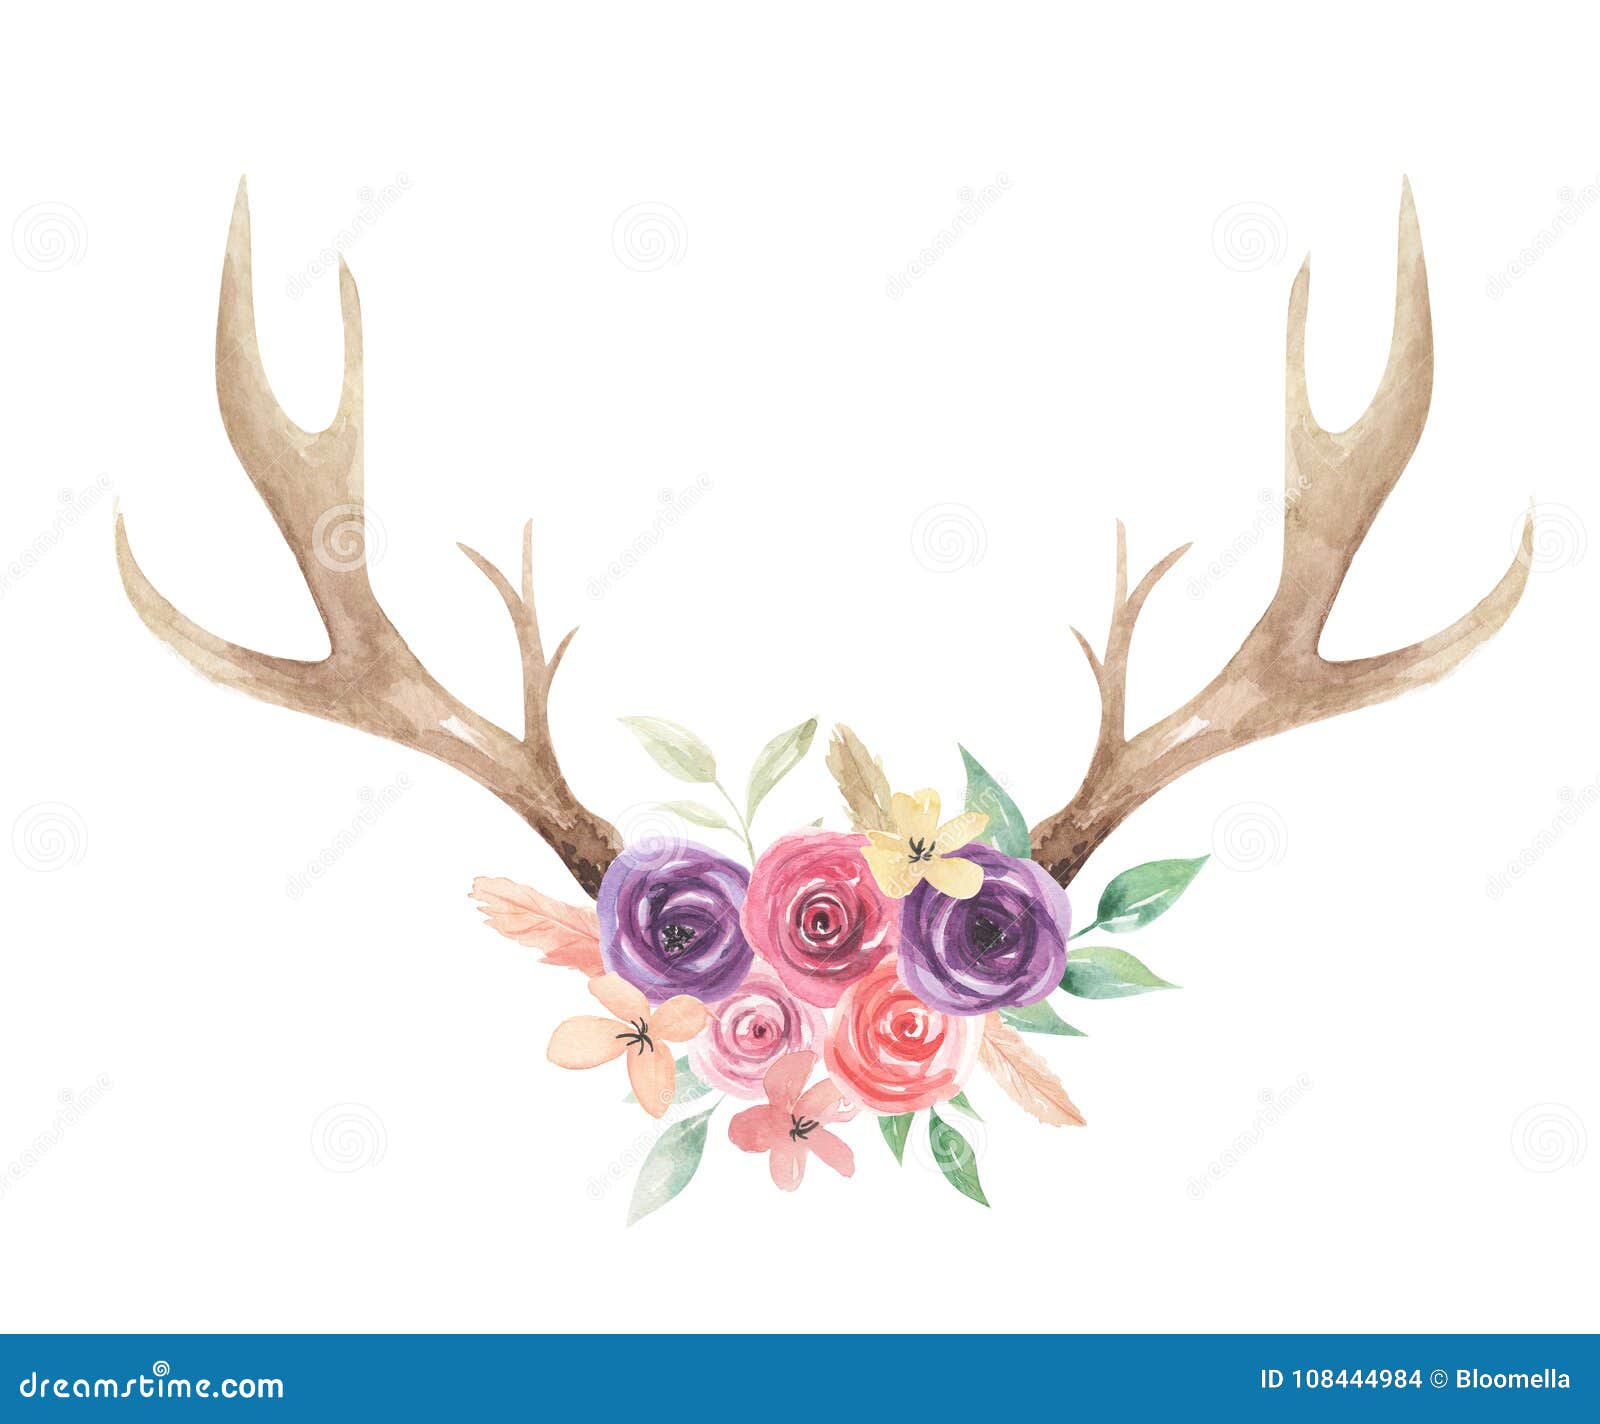 watercolor flowers florals antlers deer stag horns bone painted